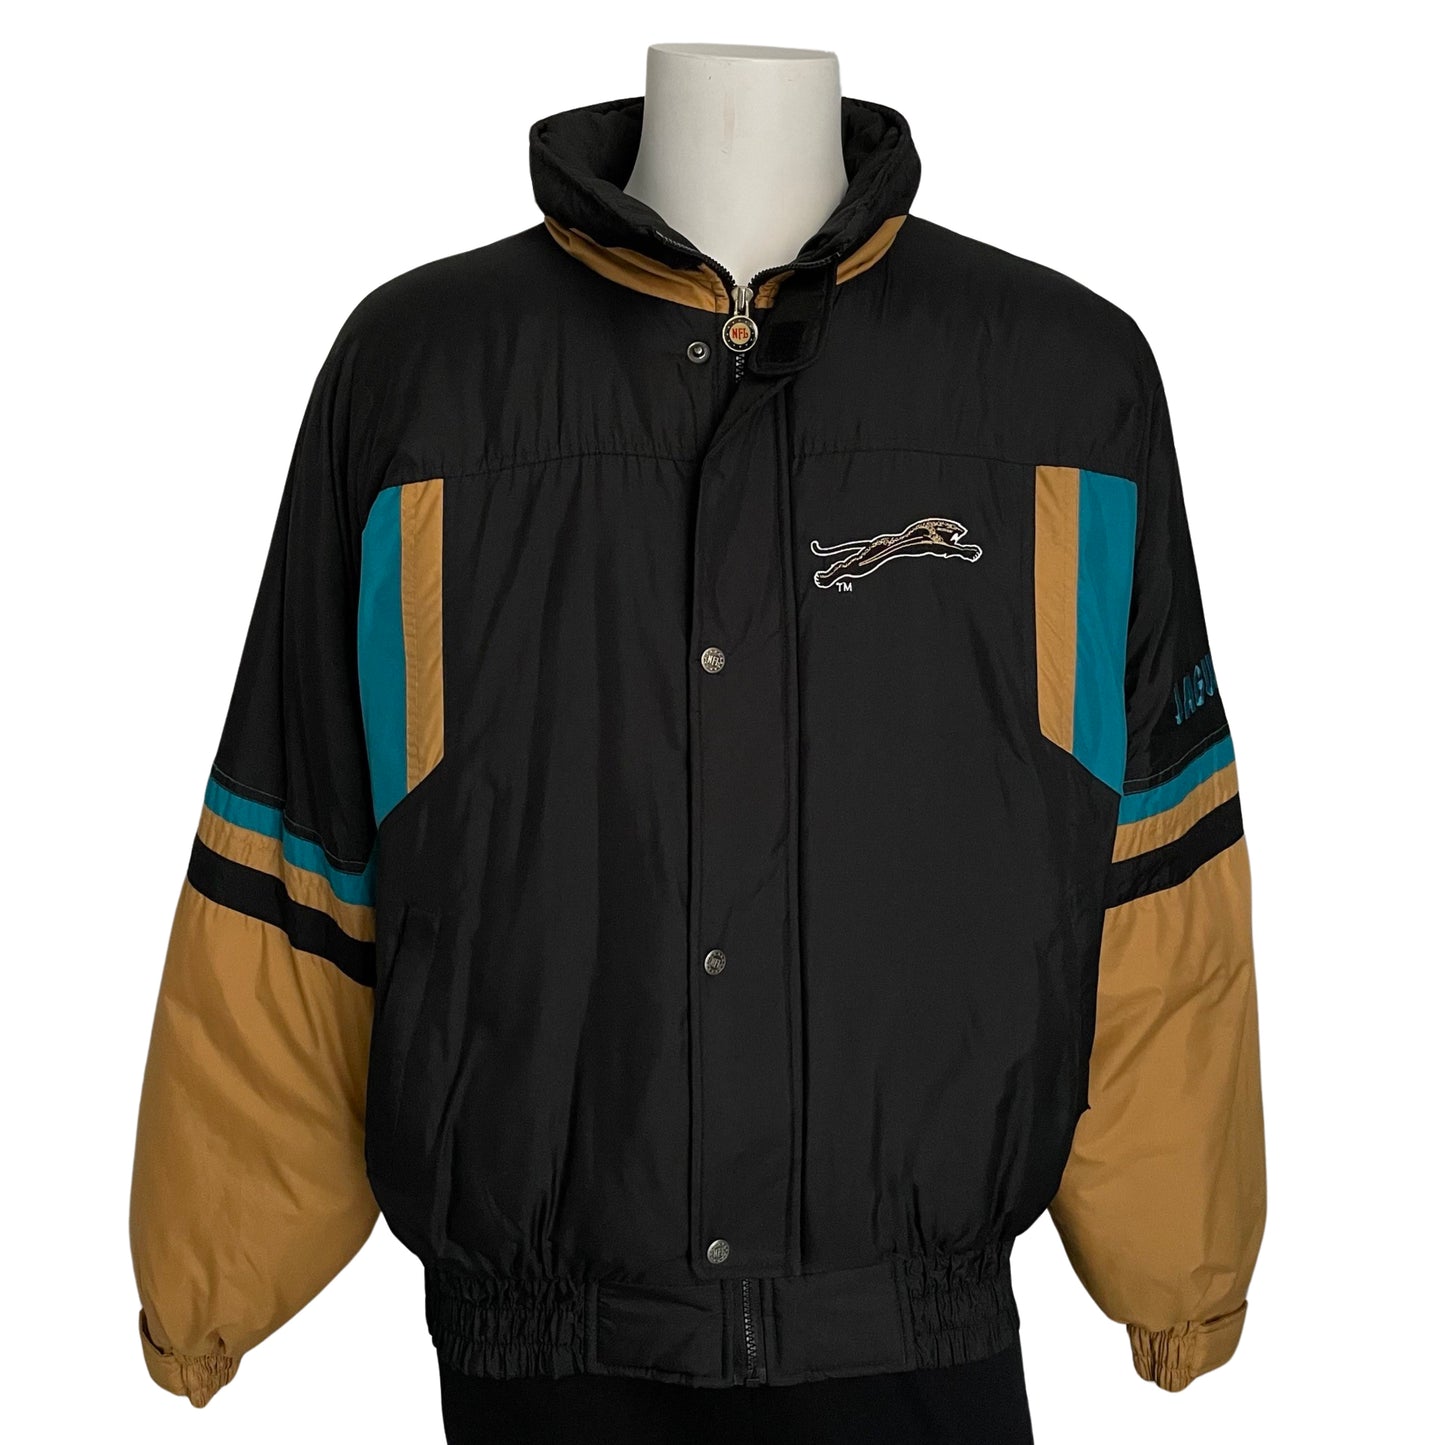 Vintage Jacksonville Jaguars banned logo jacket size XL